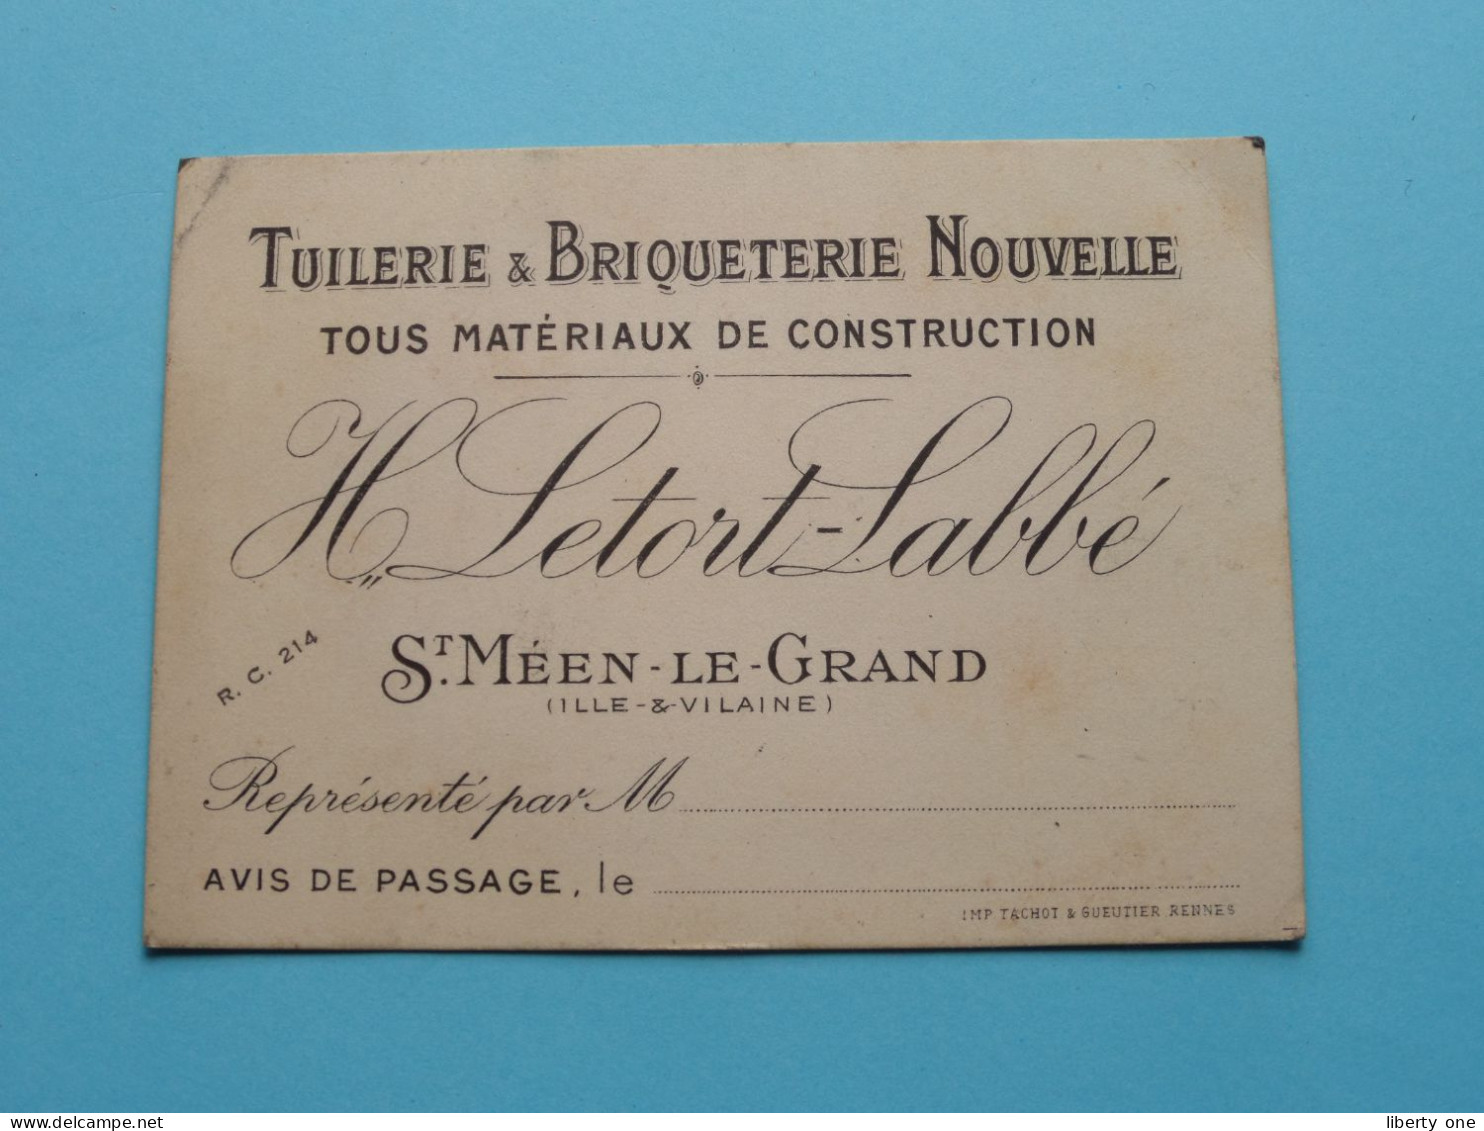 Tuilerie & Briqueterie Nouvelle H. LETORT - Labbé > St. Méen-Le-Grand ( Ille & Vilaine ) > ( Voir SCAN ) La FRANCE ! - Cartes De Visite